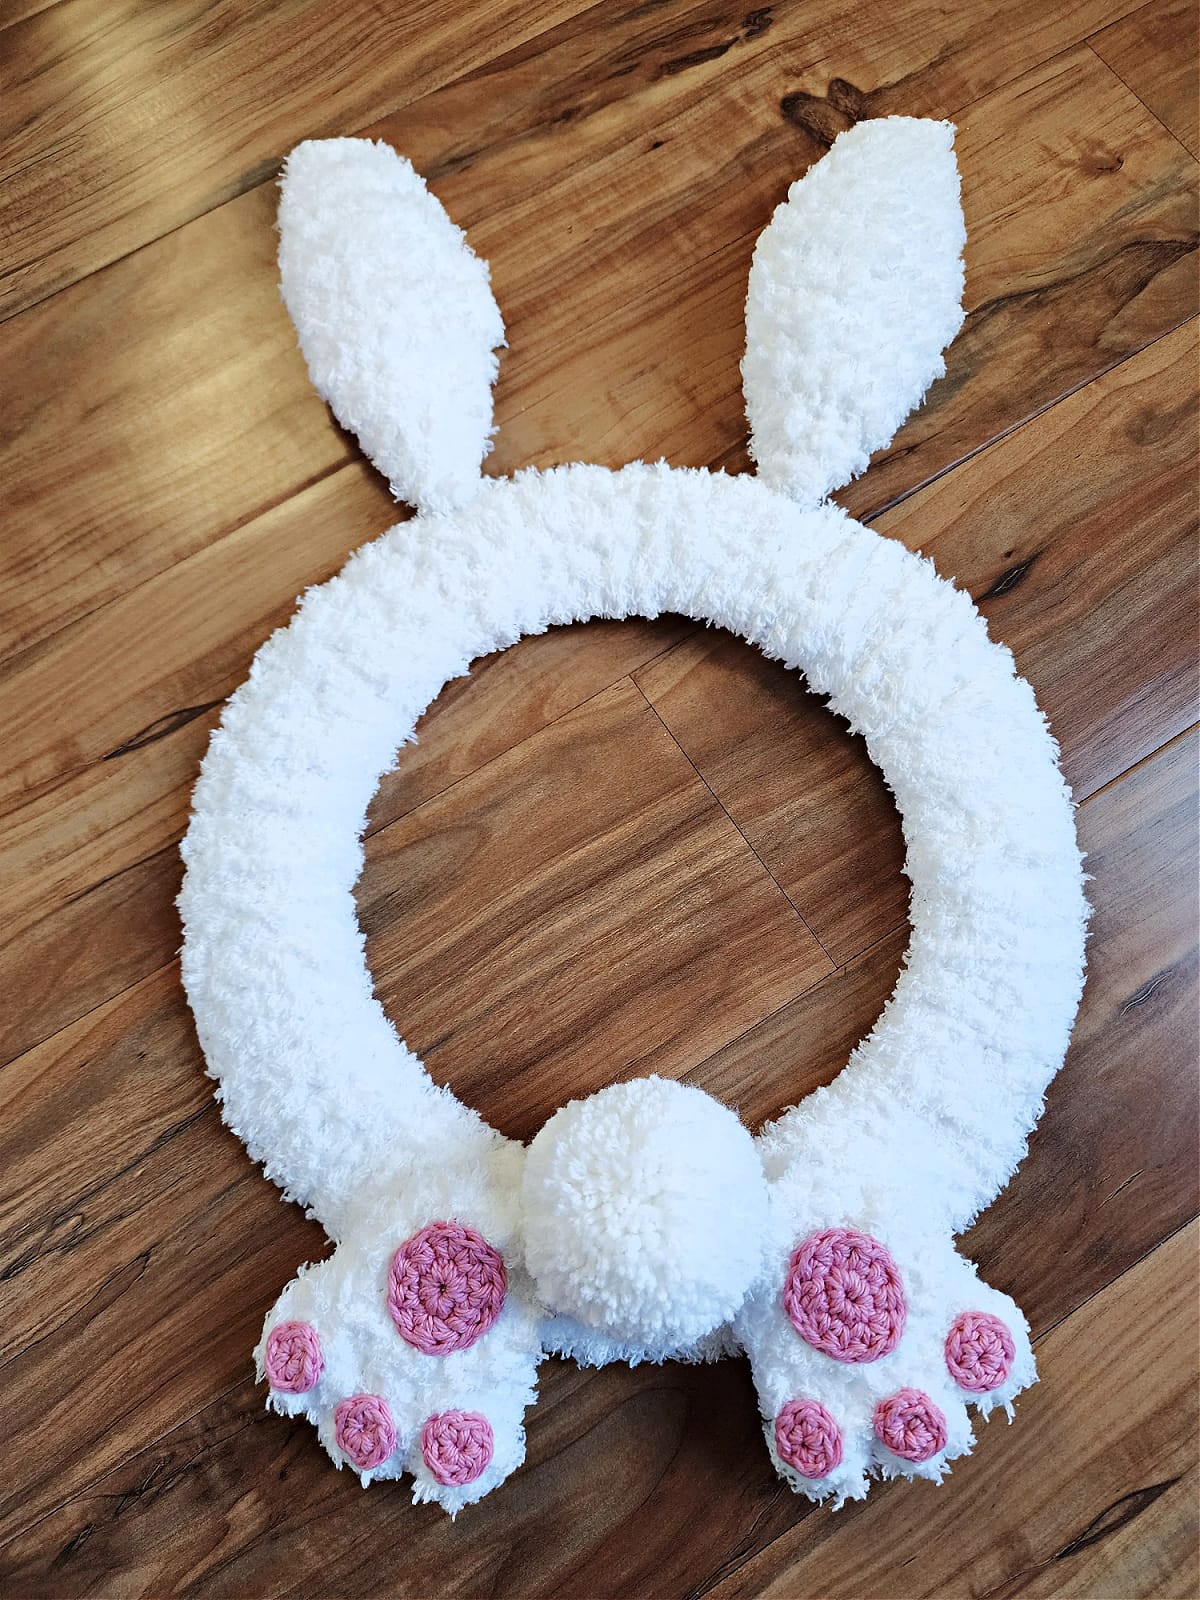 Crochet bunny wreath with bunny butt and bunny feet.